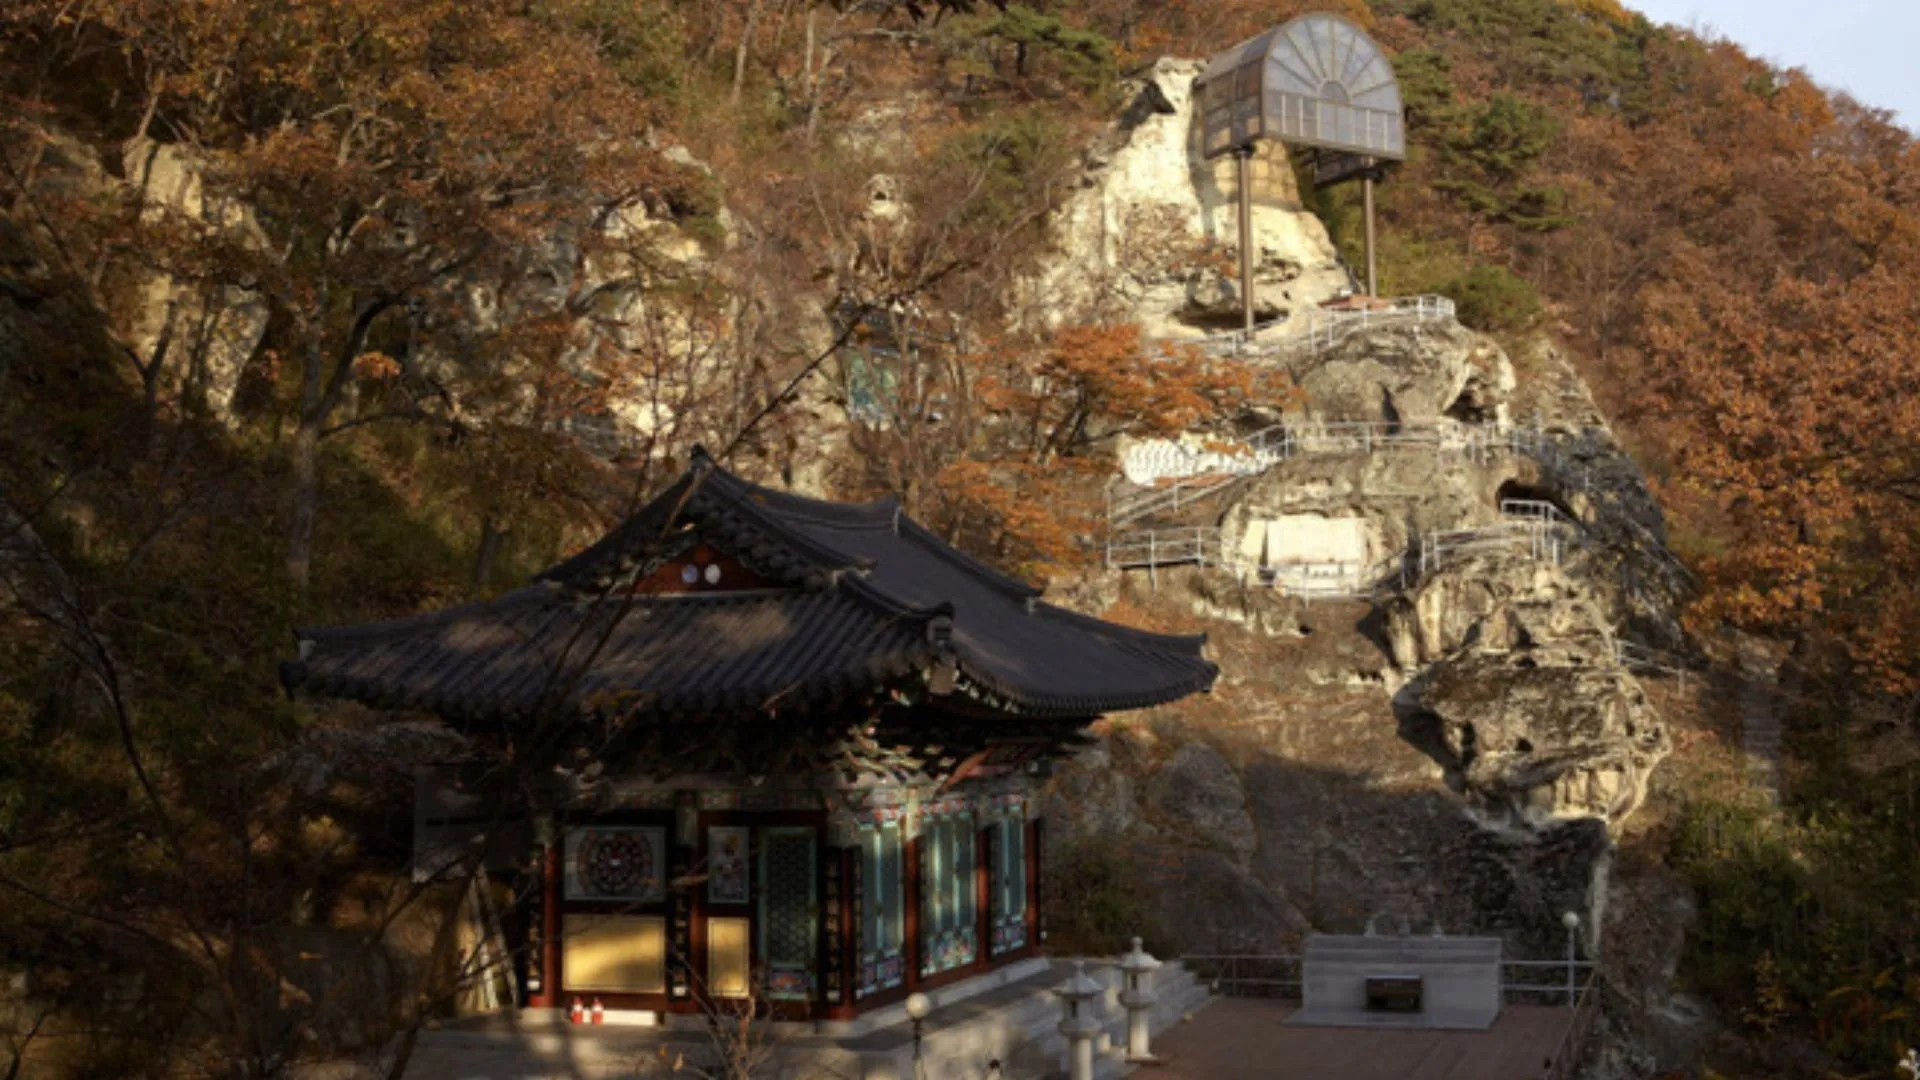 Đền Golgulsa Các ngôi chùa ở Hàn Quốc Tín dụng hình ảnh: thăm Hàn Quốc Đền Golgulsa được tạc vào vách đá vôi trên núi Hamwol, nổi tiếng là trung tâm đào tạo Sunmudo, sự kết hợp độc đáo giữa Thiền và võ thuật được truyền qua nhiều thời đại. Ngôi chùa này là nơi có 12 hang động đá vôi khá lớn và có bức phù điêu Phật nổi bật được chạm khắc ở phần trên cùng của vách đá.  Đối với những người muốn trải nghiệm Sunmudo trực tiếp, Đền Golgulsa cung cấp chương trình lưu trú tại chùa, nơi du khách có thể tham gia khóa huấn luyện võ thuật này.